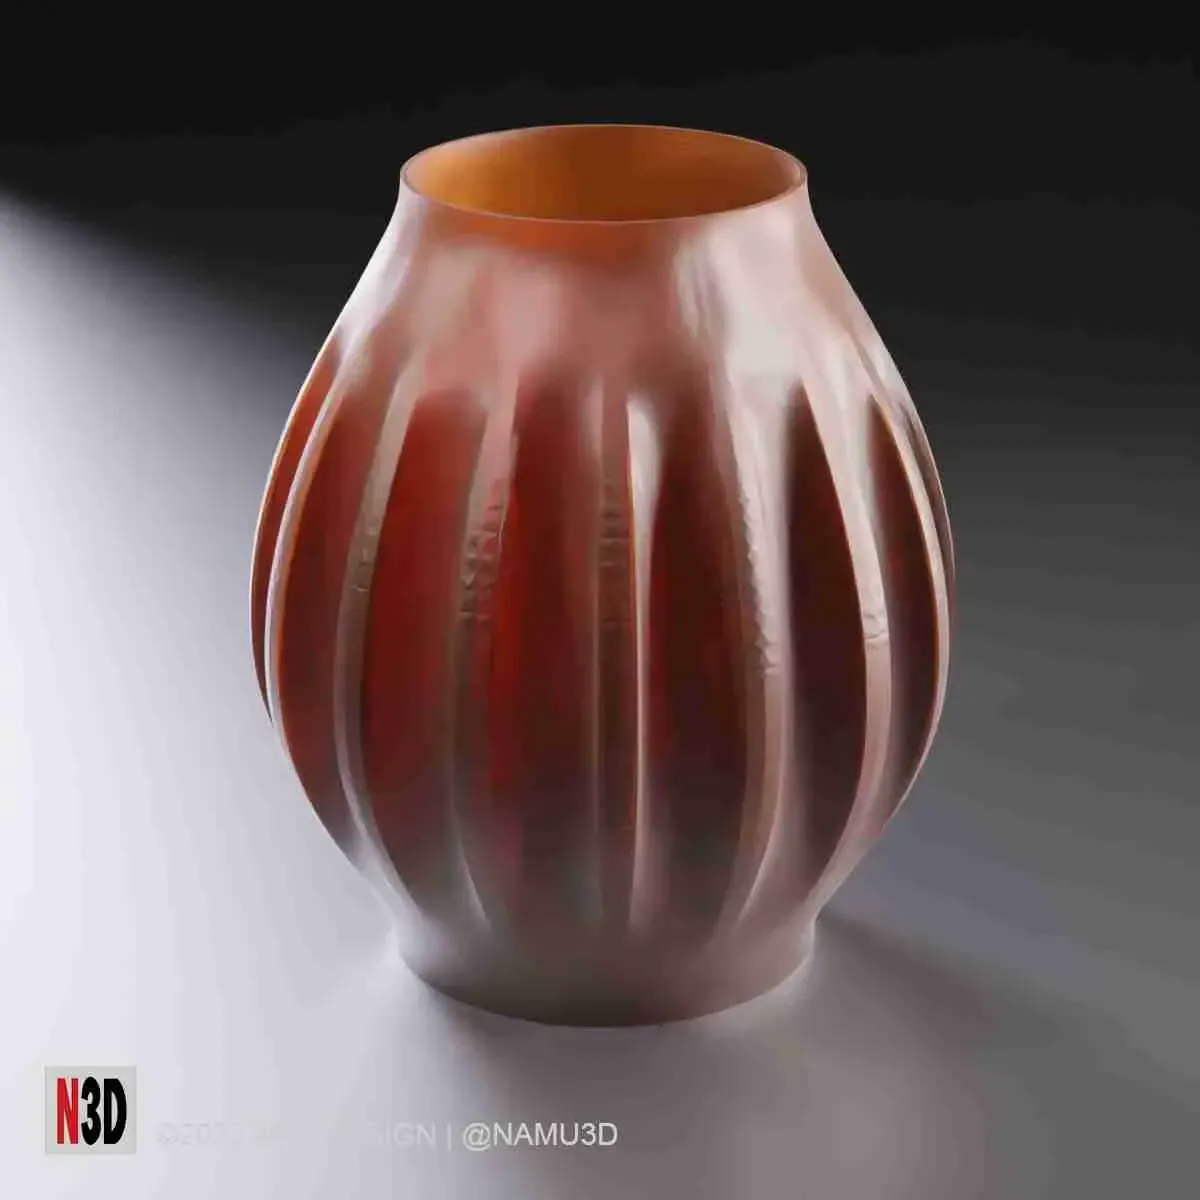 Vase 1001 - Bulb vase